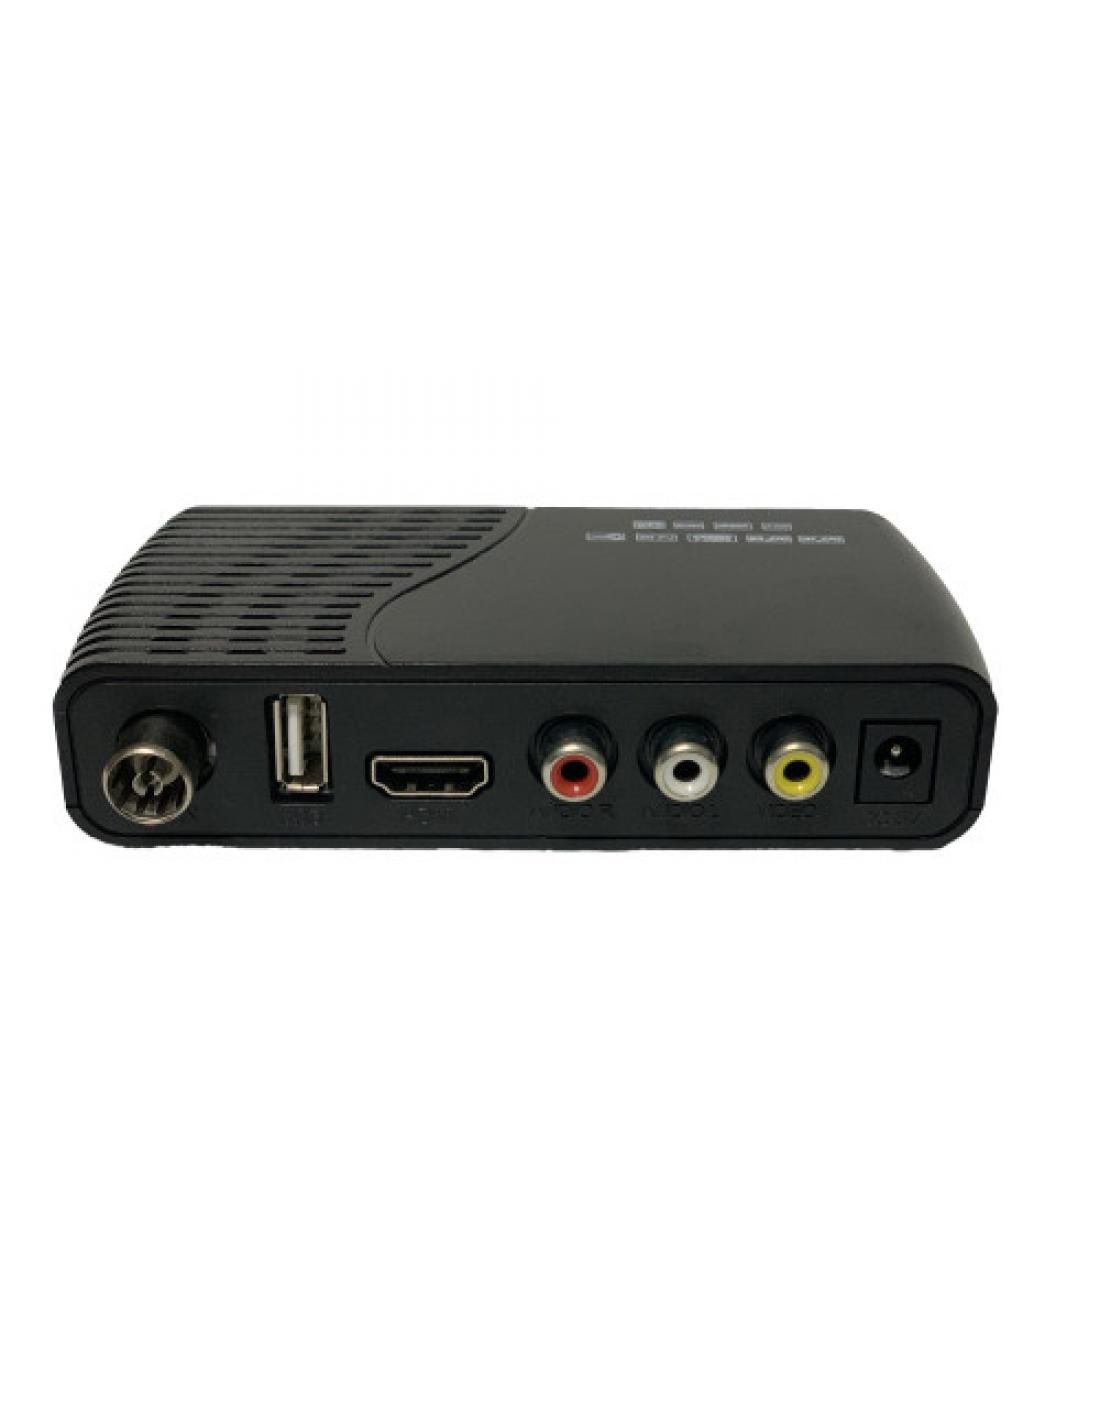 Receptor TDT Coche con TDT2 HD 1080i MPEG2/MPEG4 con 2 antenas y HDMI